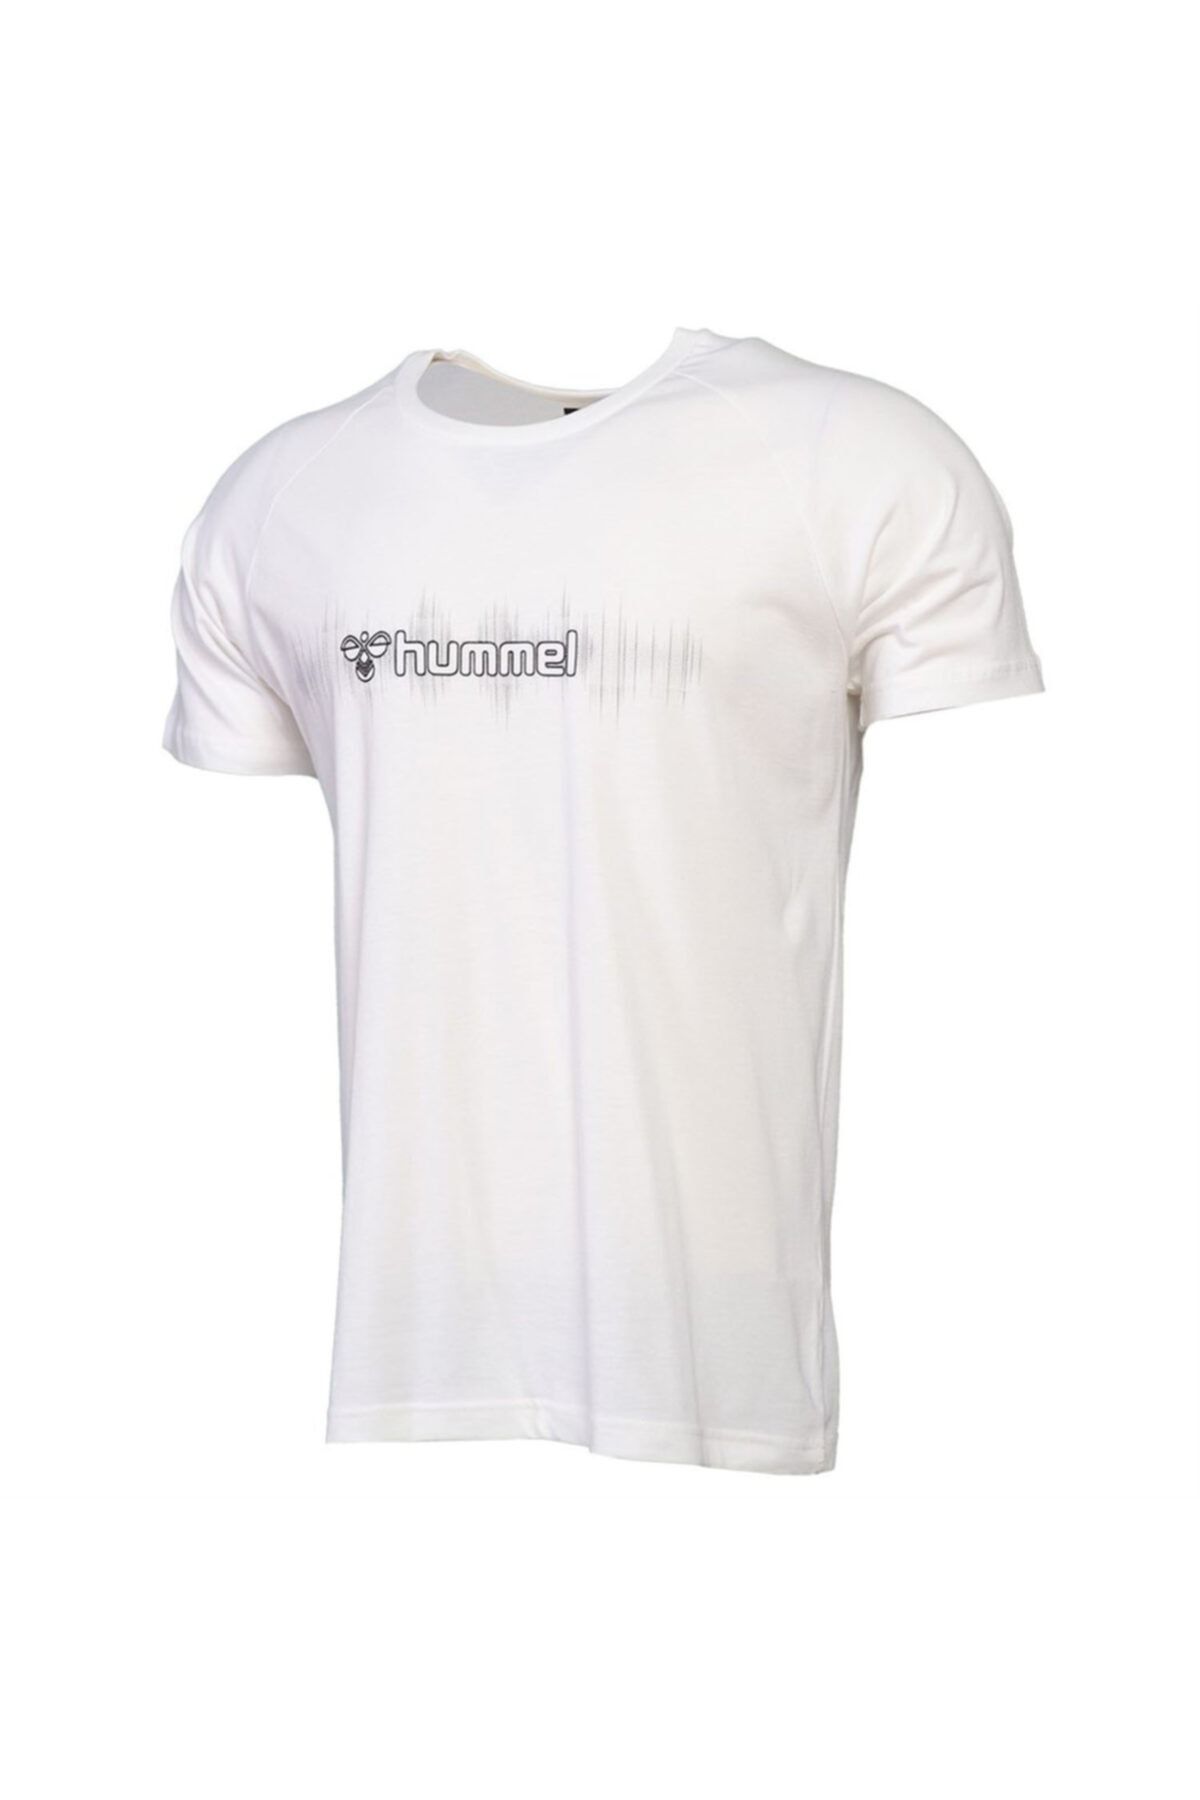 hummel HMLPITA T-SHIRT S/S TEE Beyaz Erkek T-Shirt 101086324